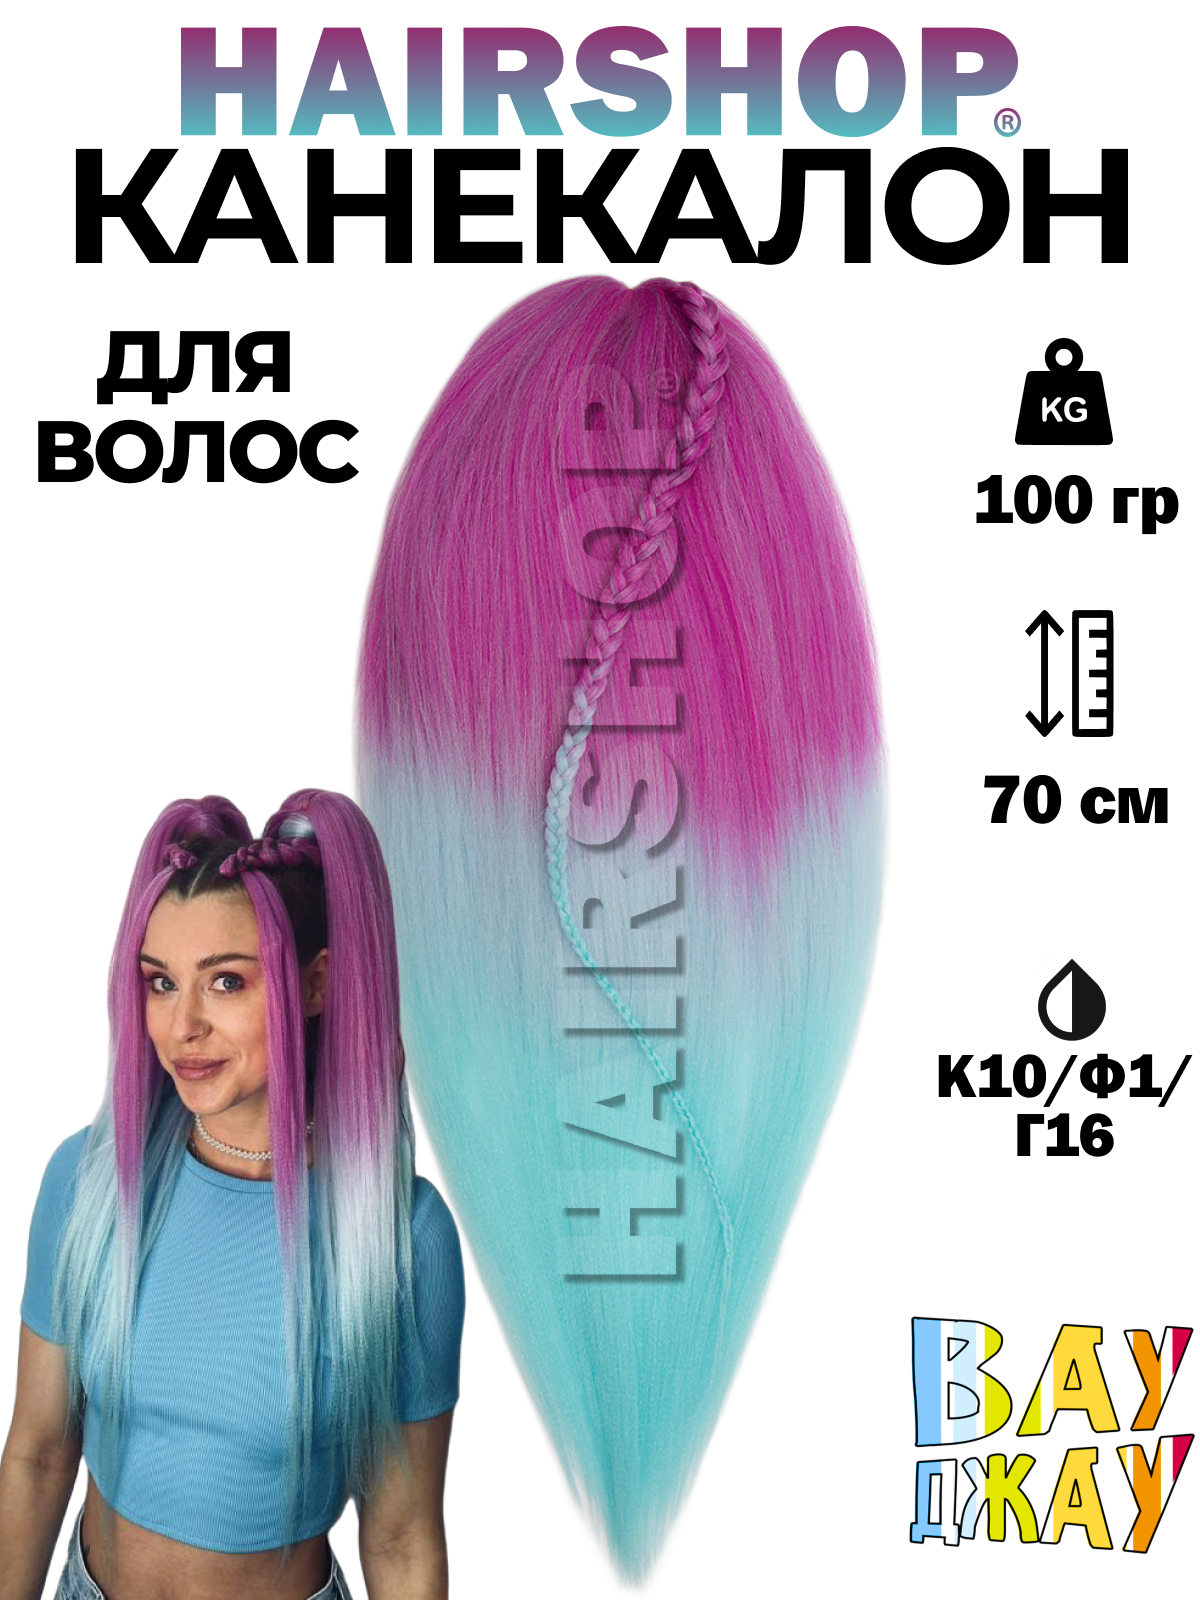 Канекалон HAIRSHOP Вау Джау К10-Ф1-Г16 1,3м 100г Розовый, Нежно-фиолетовый и голубой канекалон hairshop вау джау 8 613 1 3м 100г темный шоколад блонд